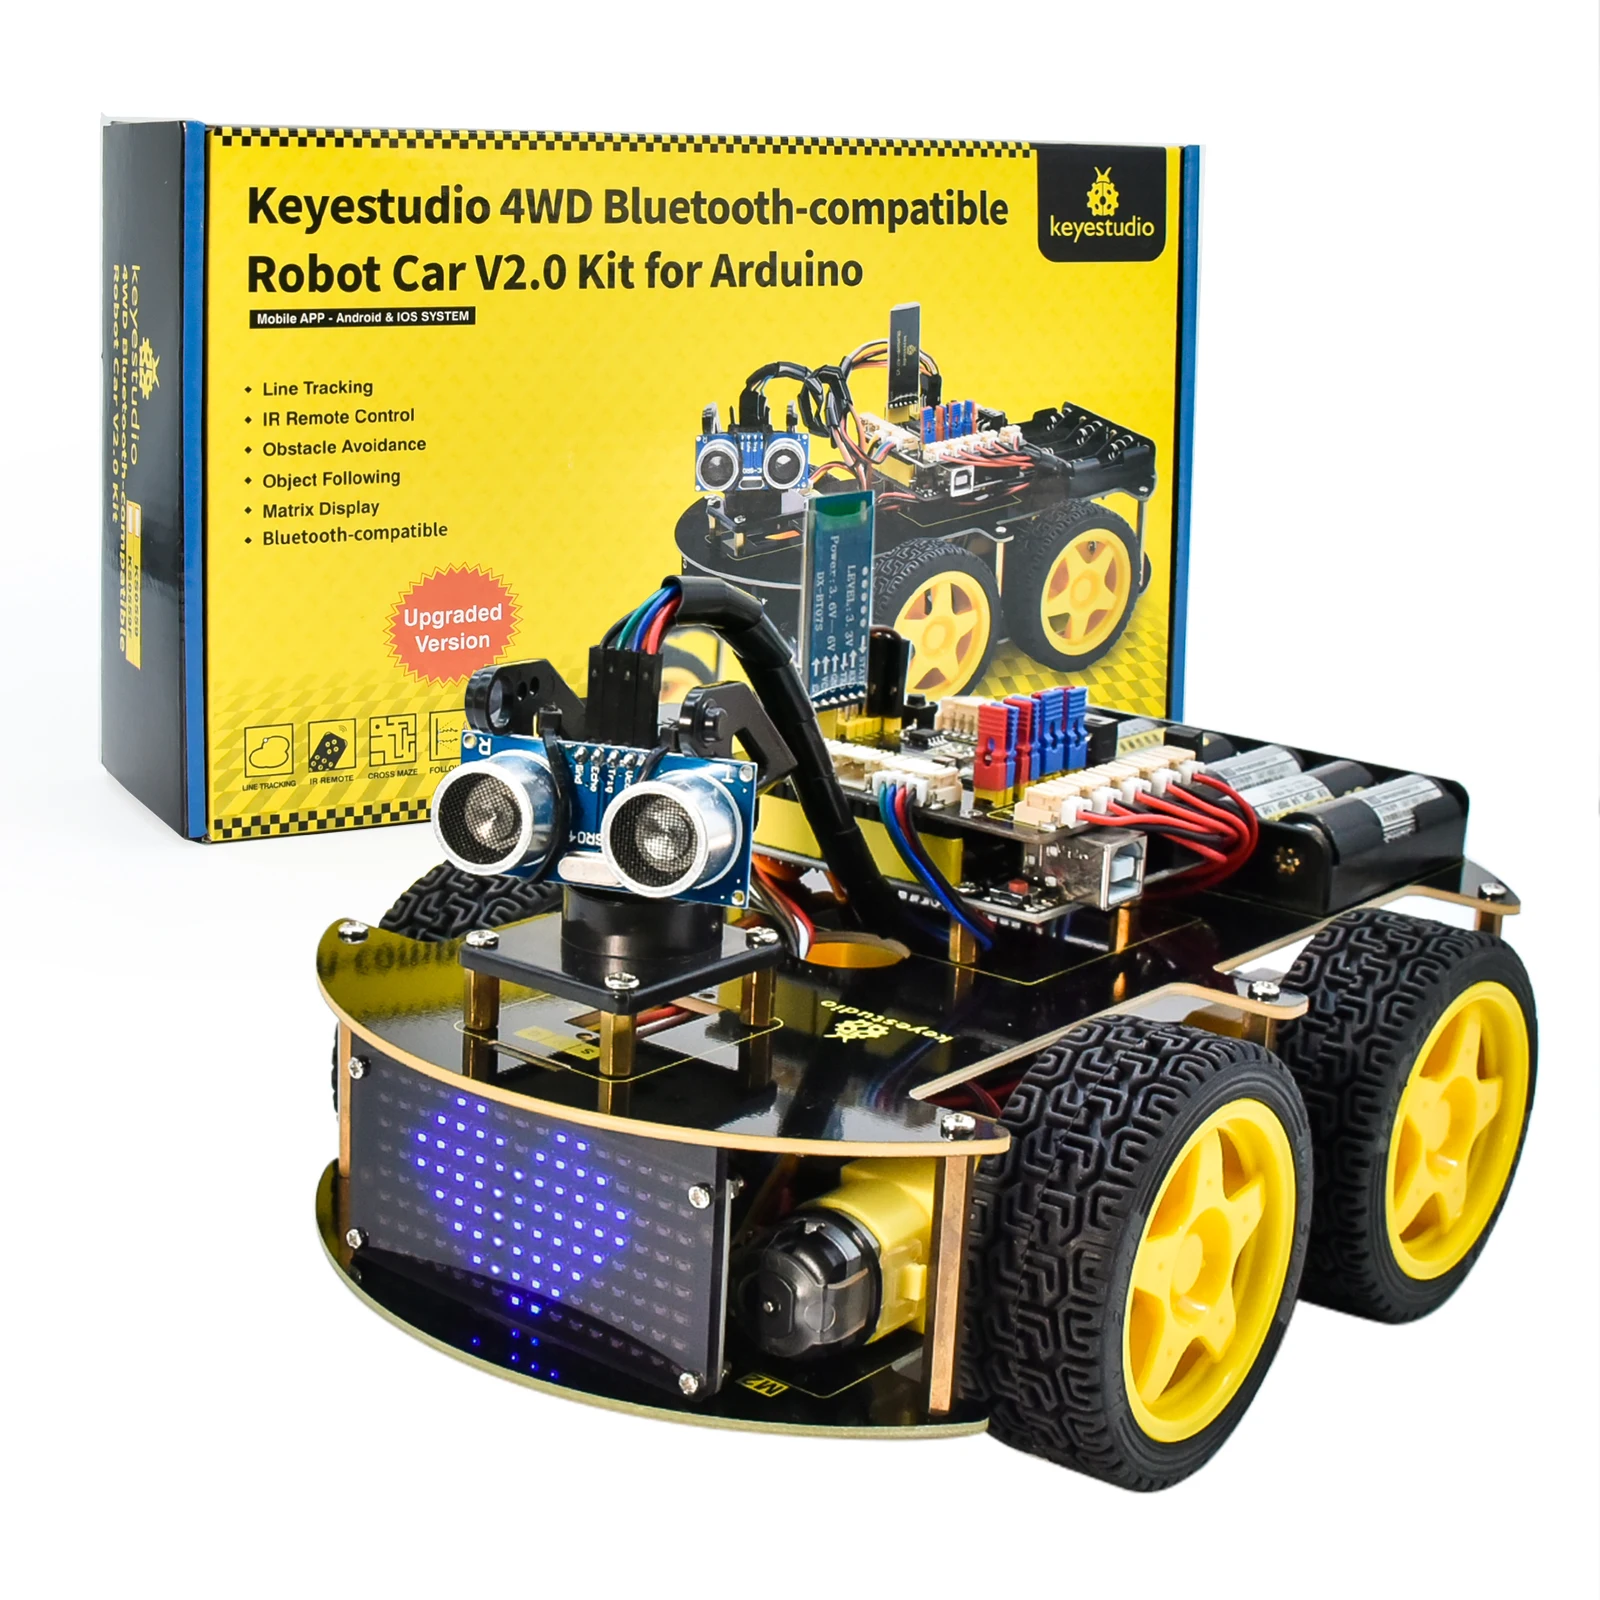 Tanio Keyestudio 4WD Multi BT samochód Robot Kit V2.0 W/LED